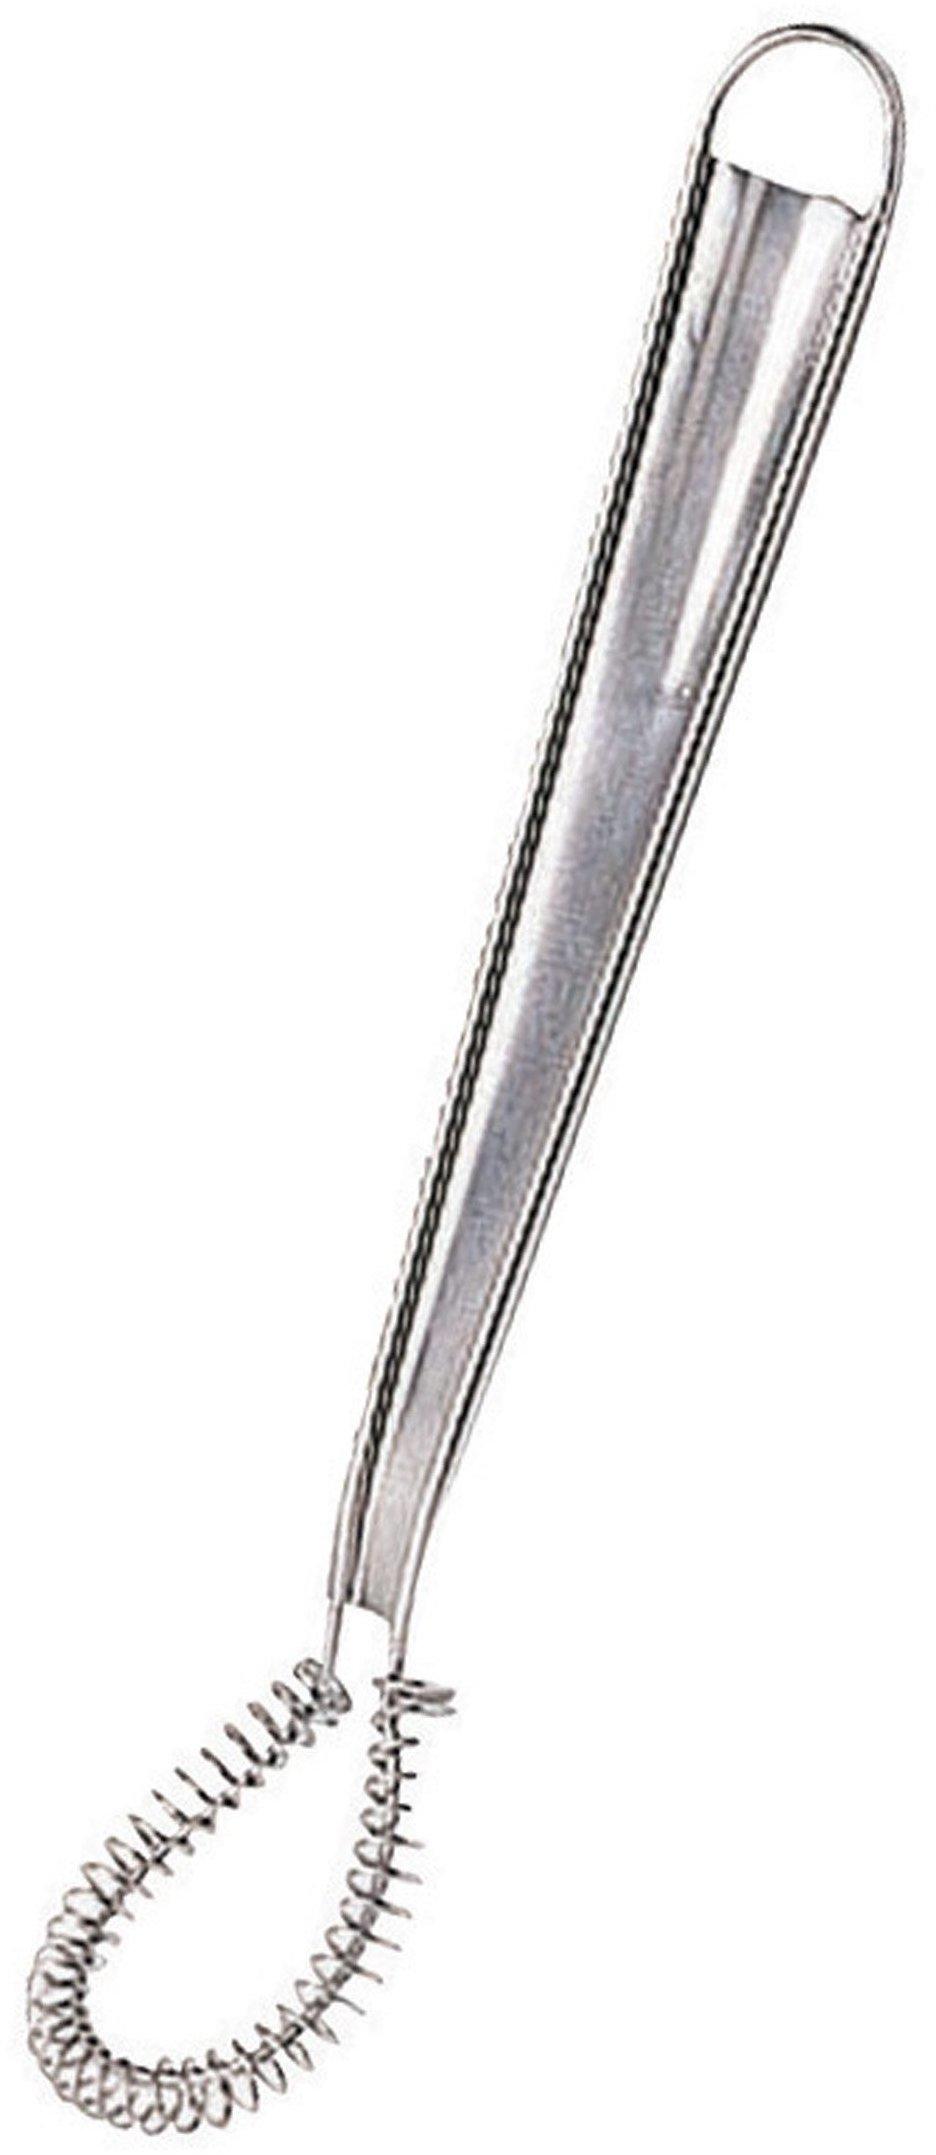 Mini Spiralbesen aus Edelstahl 18/10 20 cm Länge robuste Qualität 